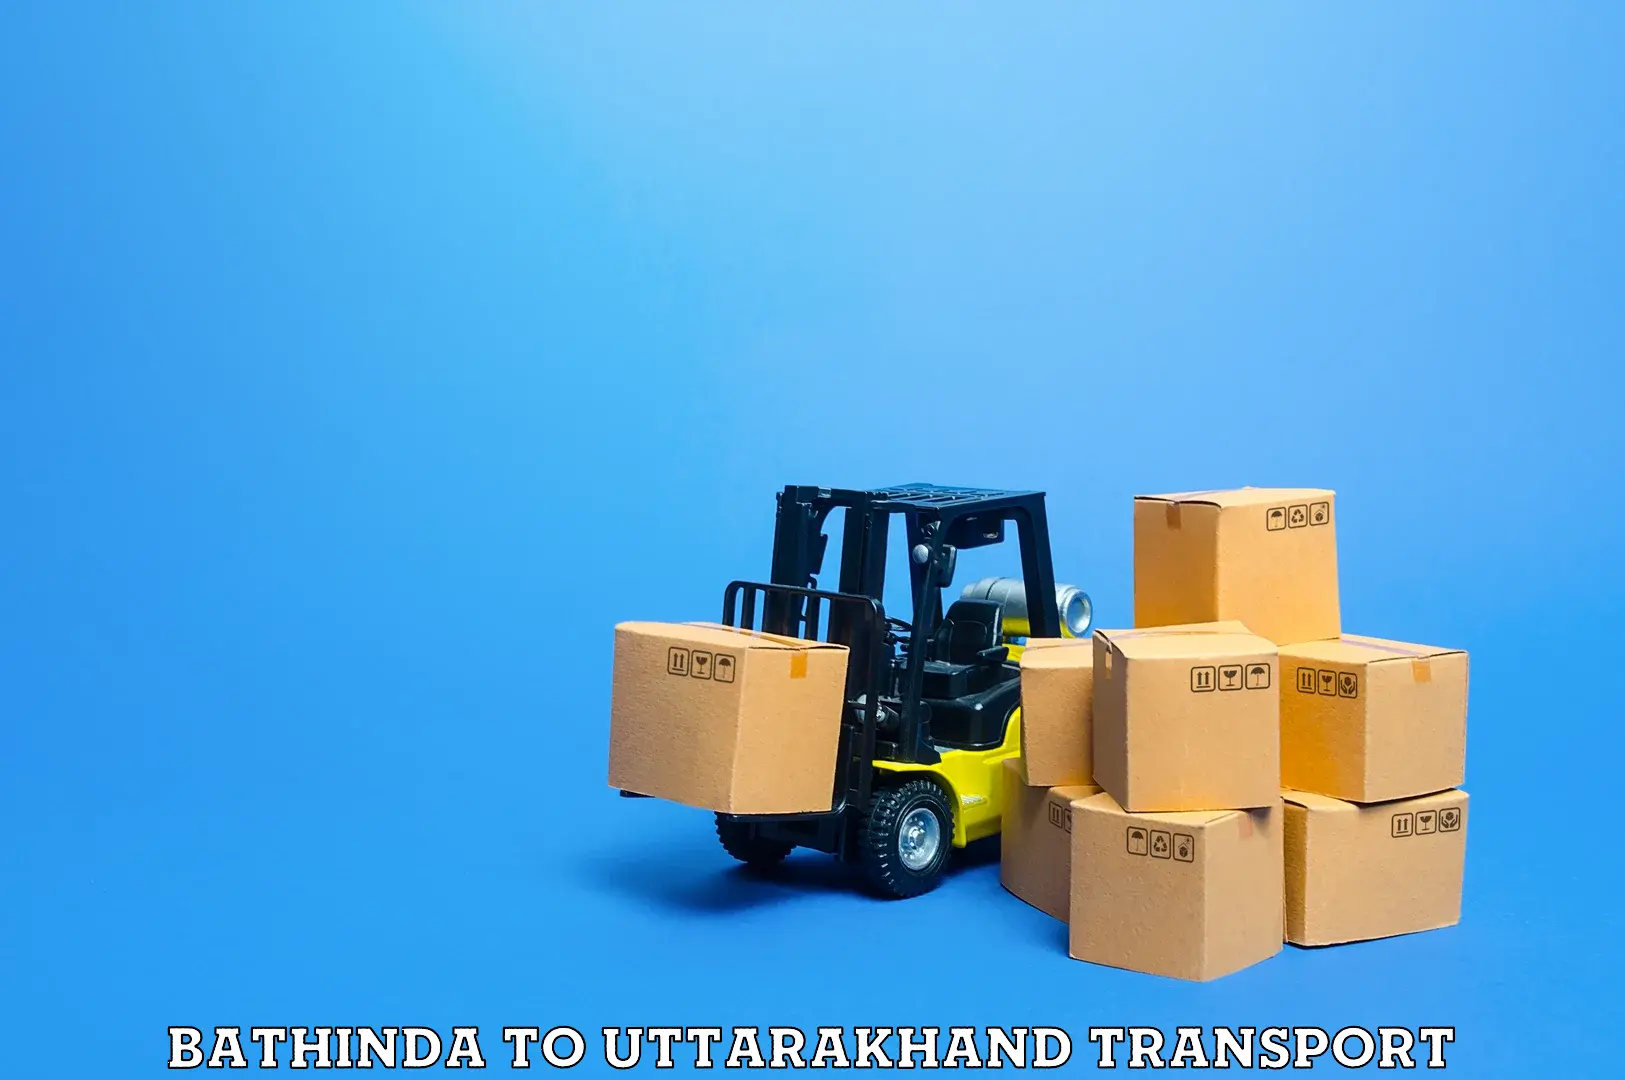 Nationwide transport services Bathinda to Uttarakhand